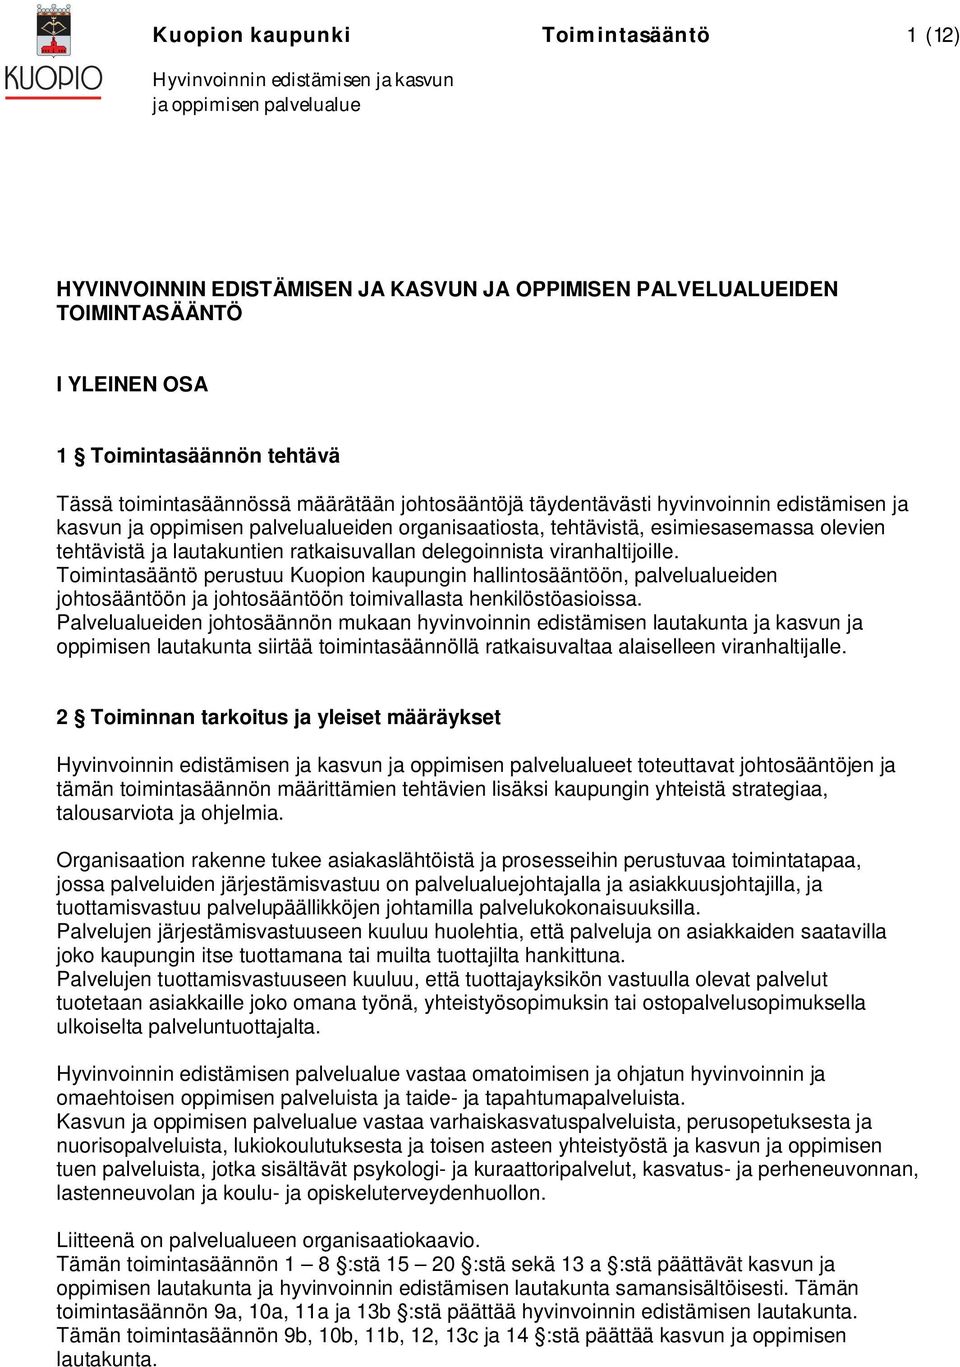 Toimintasääntö perustuu Kuopion kaupungin hallintosääntöön, palvelualueiden johtosääntöön ja johtosääntöön toimivallasta henkilöstöasioissa.